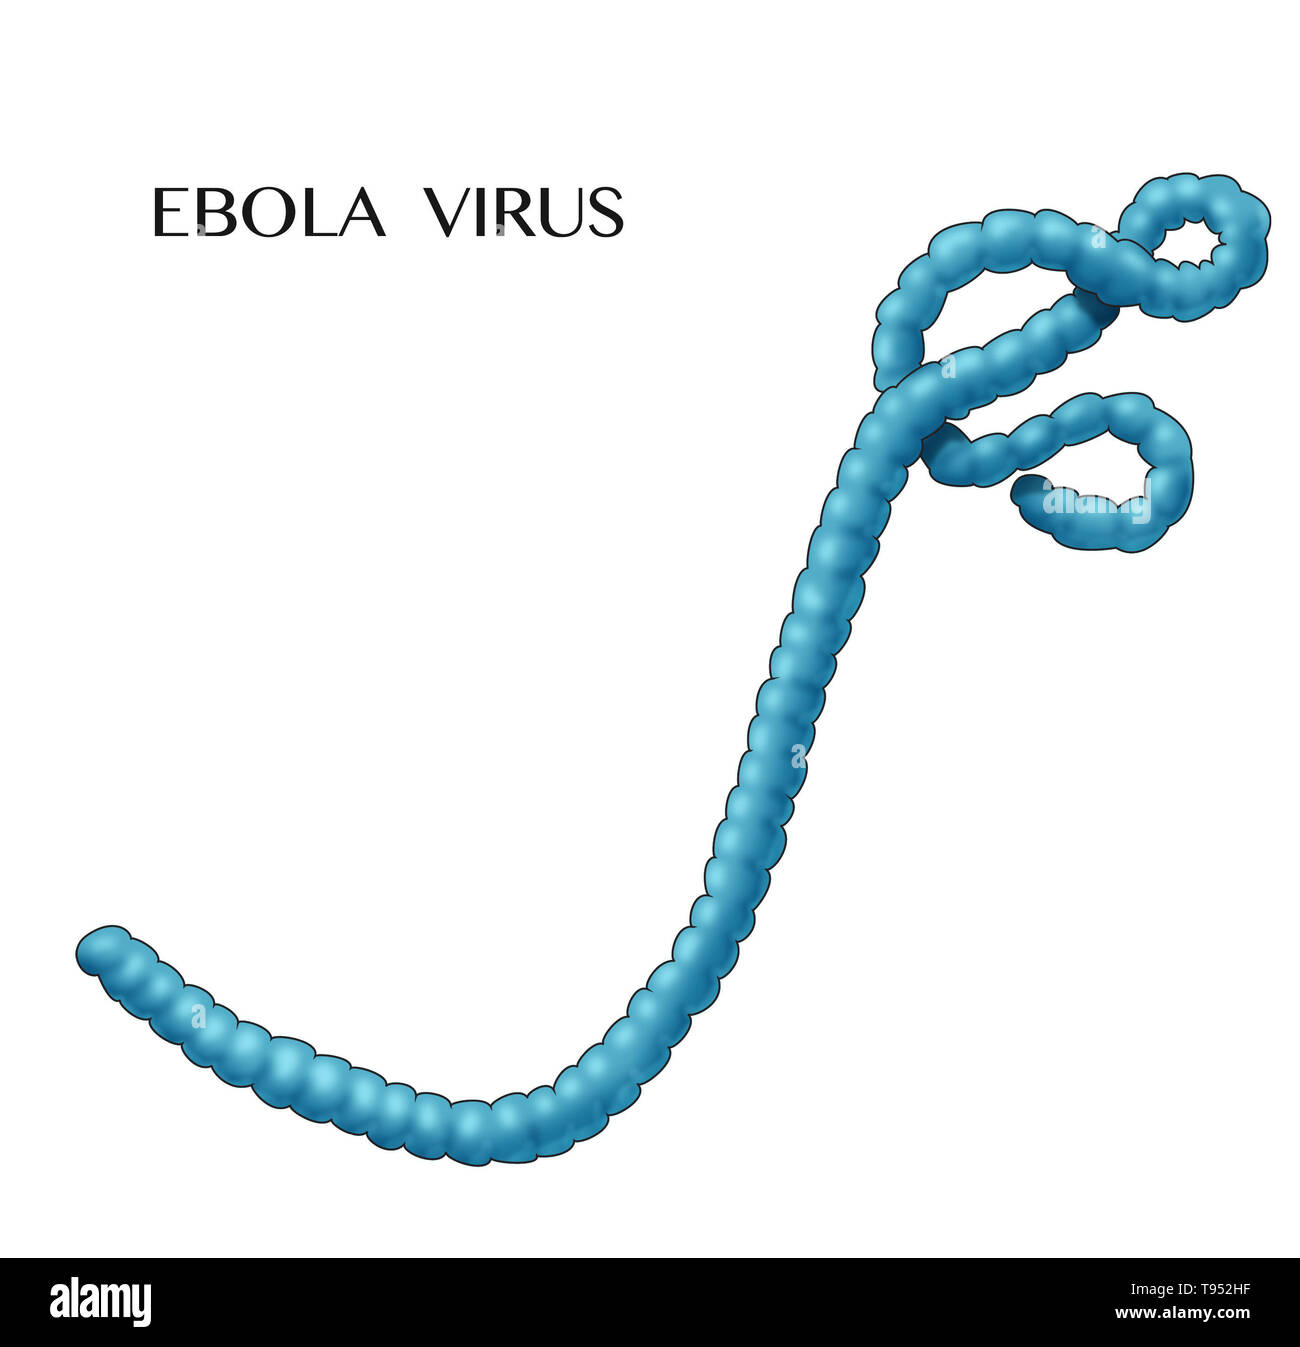 Illustration du virus Ebola. Virus Ebola provoque une forte fièvre hémorragique et souvent fatale chez les humains et autres mammifères, connu sous le nom de maladie du virus Ebola. Banque D'Images